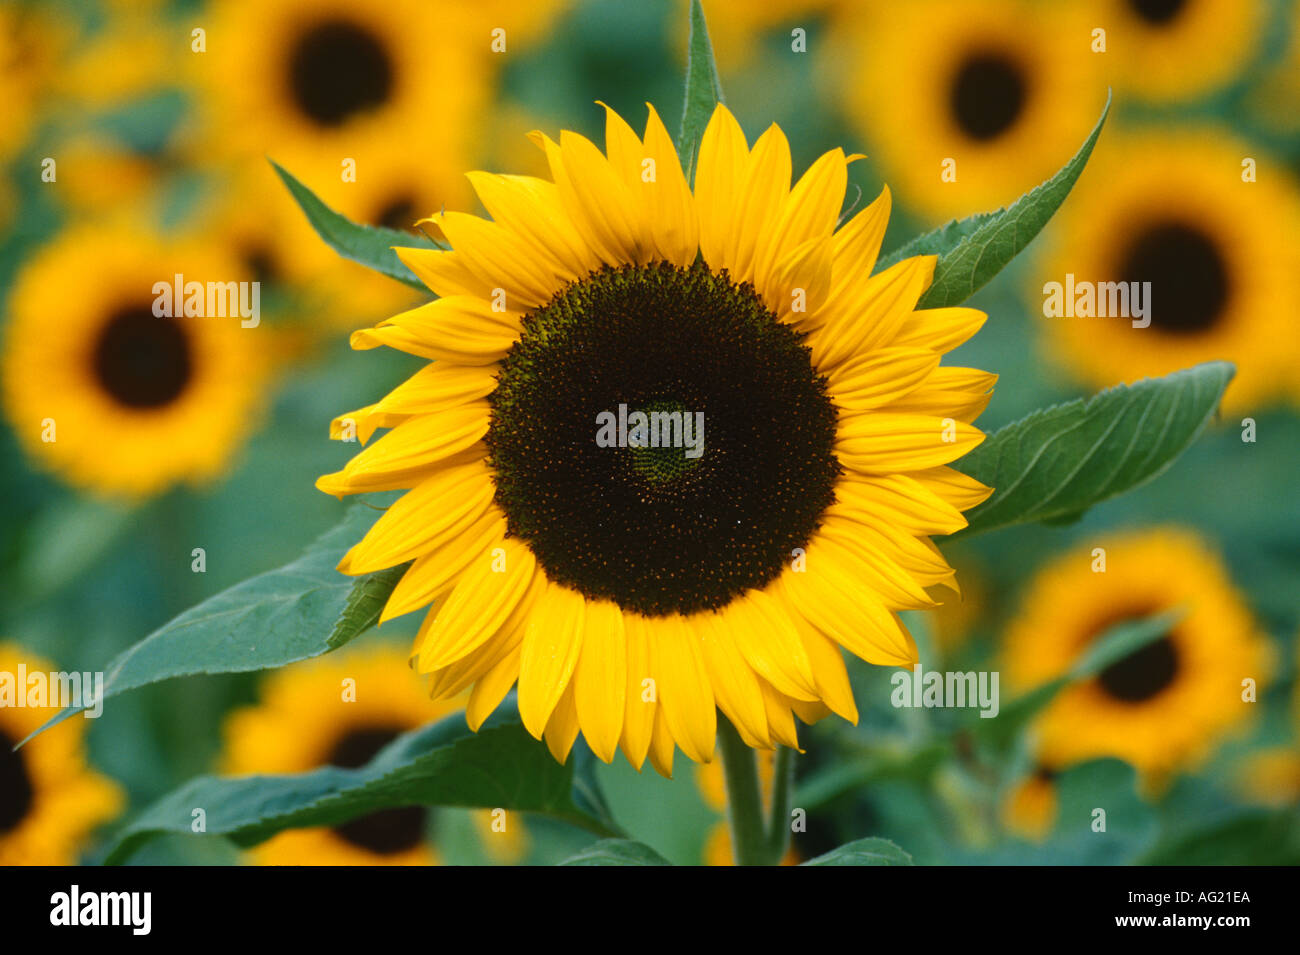 Mass of sunflowers Stock Photo